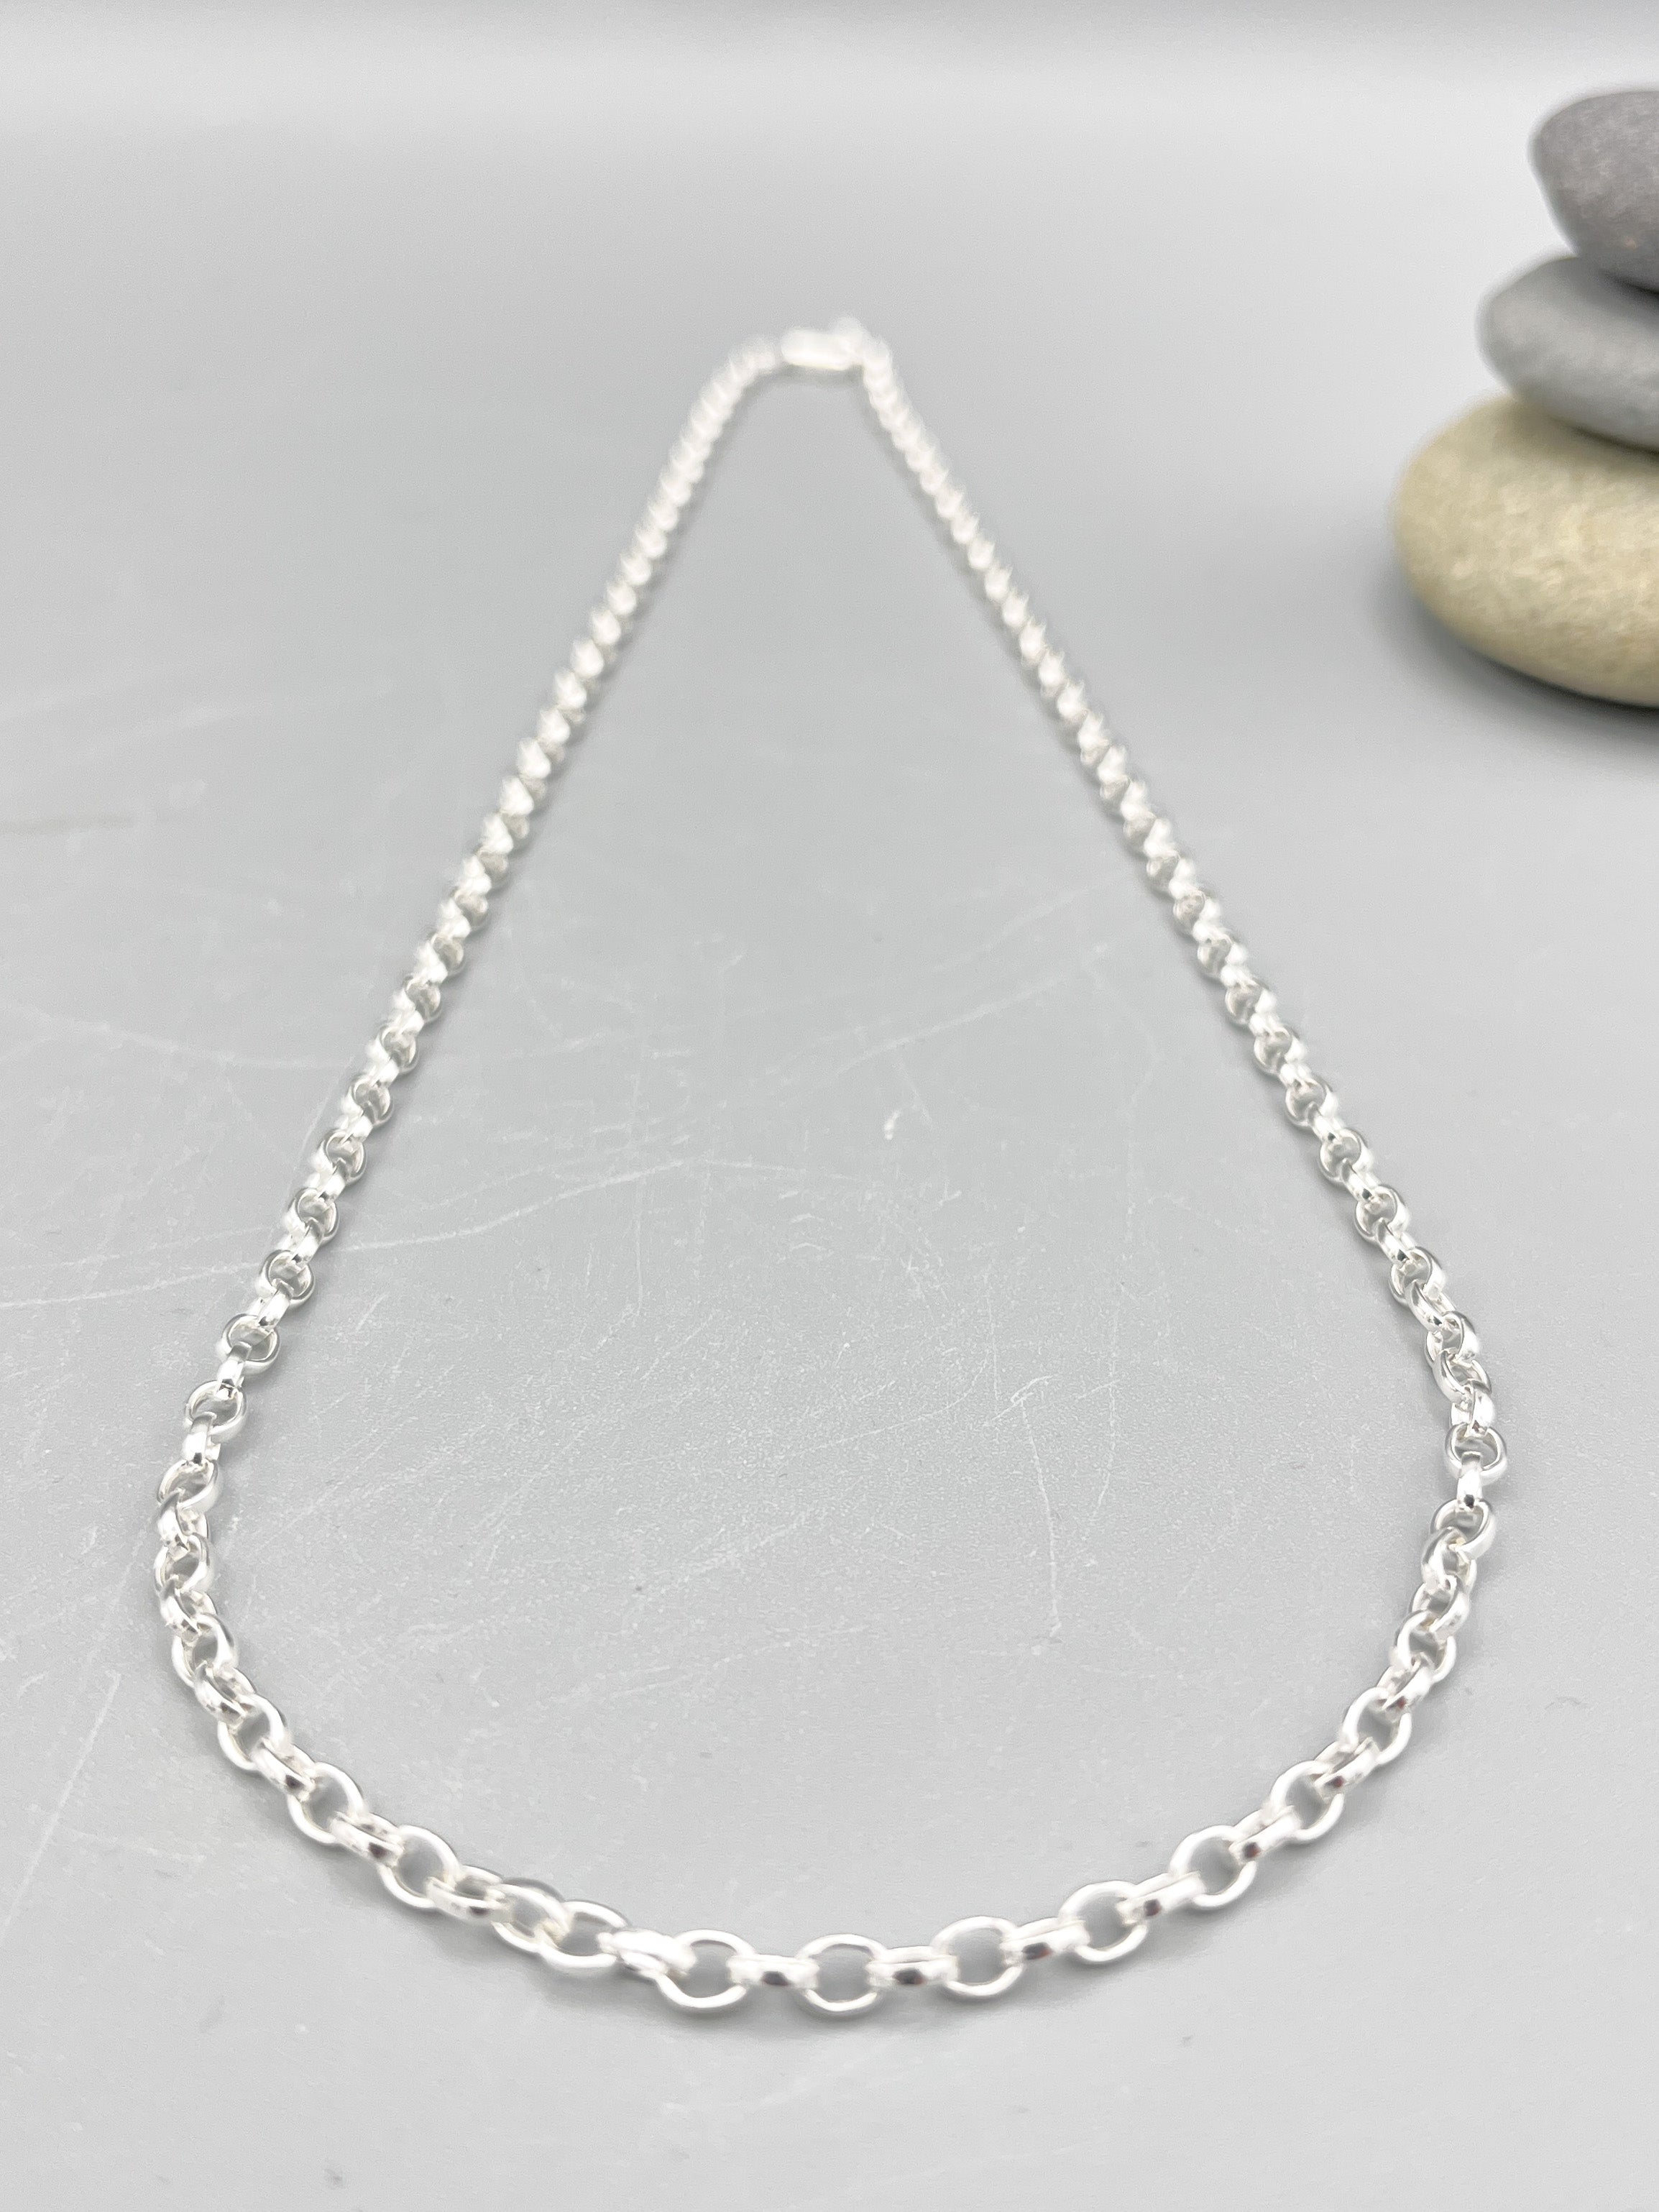 Sterling Silver Necklace. 20” (50cm) long polished 3mm polished belcher link